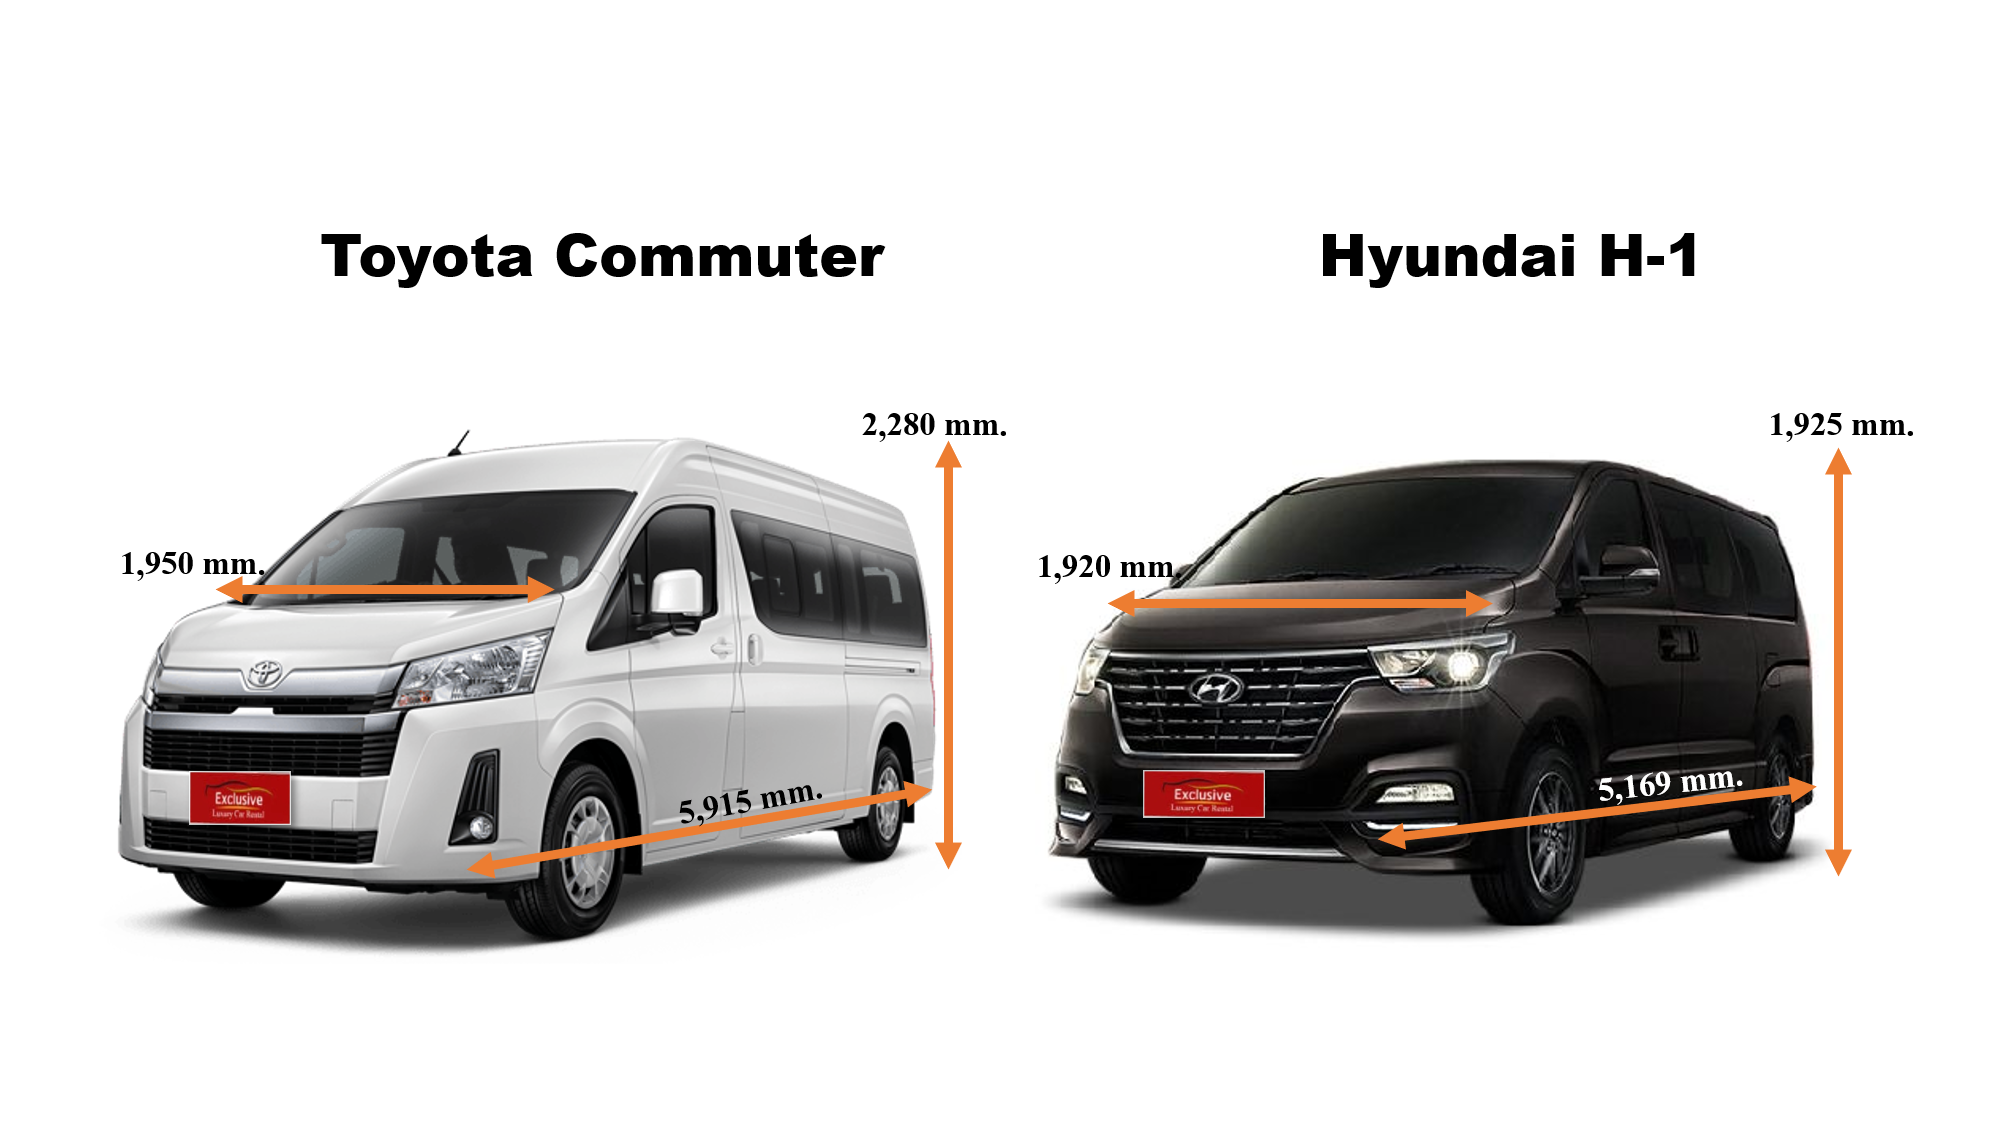 Compare Commuter van VS H-1 van, which model is better ?